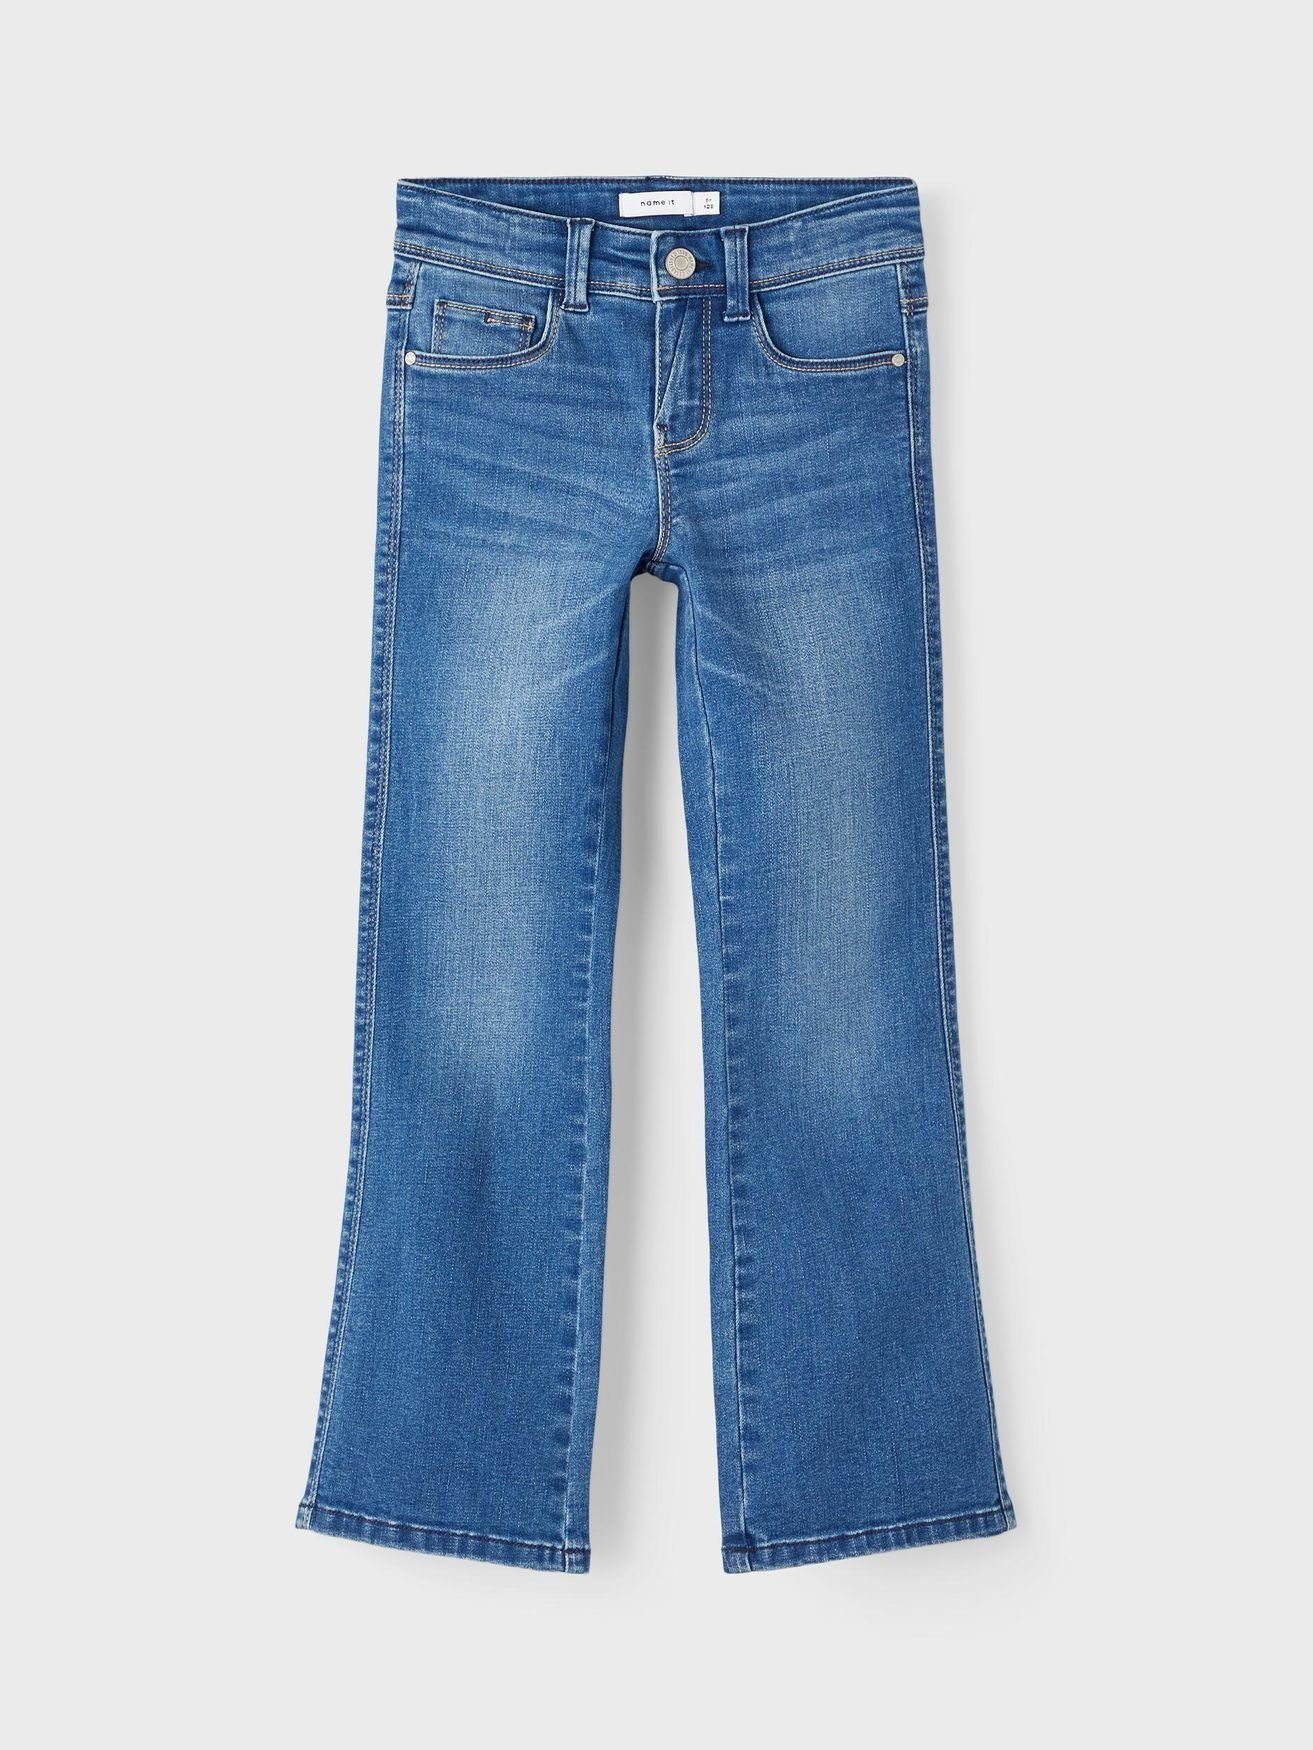 Jeans Dunkelblau Mädchen 5535 NKFPOLLY Denim Regular-fit-Jeans Name Hose in Straight It Leg